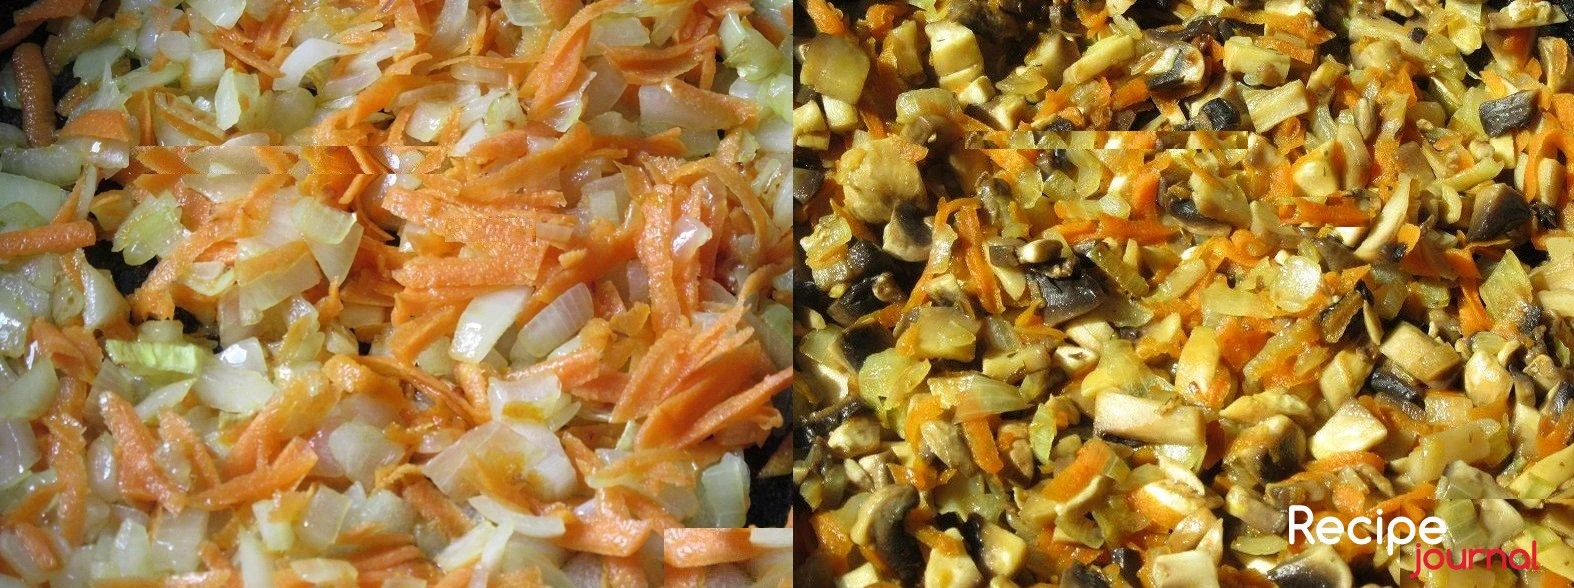 Отварить до готовности чечевицу. Почистить и поставить вариться картофель. Мелко порезать лук и натереть морковь на крупной терке. Припустить  в разогретом растительном масле лук, добавить морковь и еще немного обжарить, затем добавить чечевицу, перемешать и потушить пару минут.